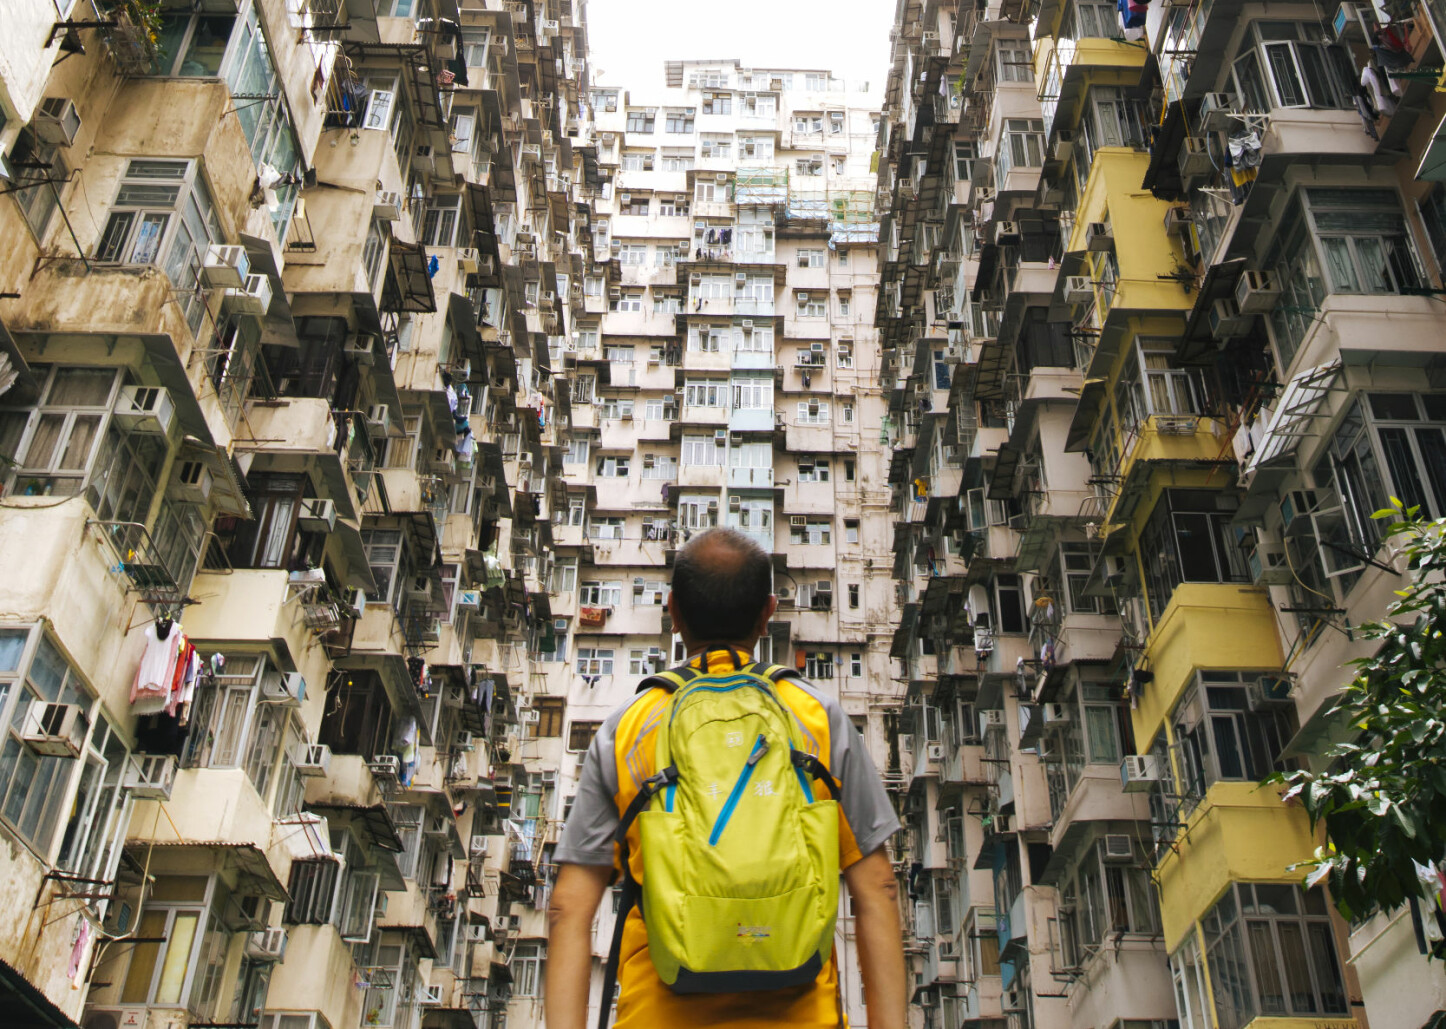 TETTBODD: Folk i Hong Kong bor tett. Noen steder tetter enn andre. Rull ned for å se "hele bildet".